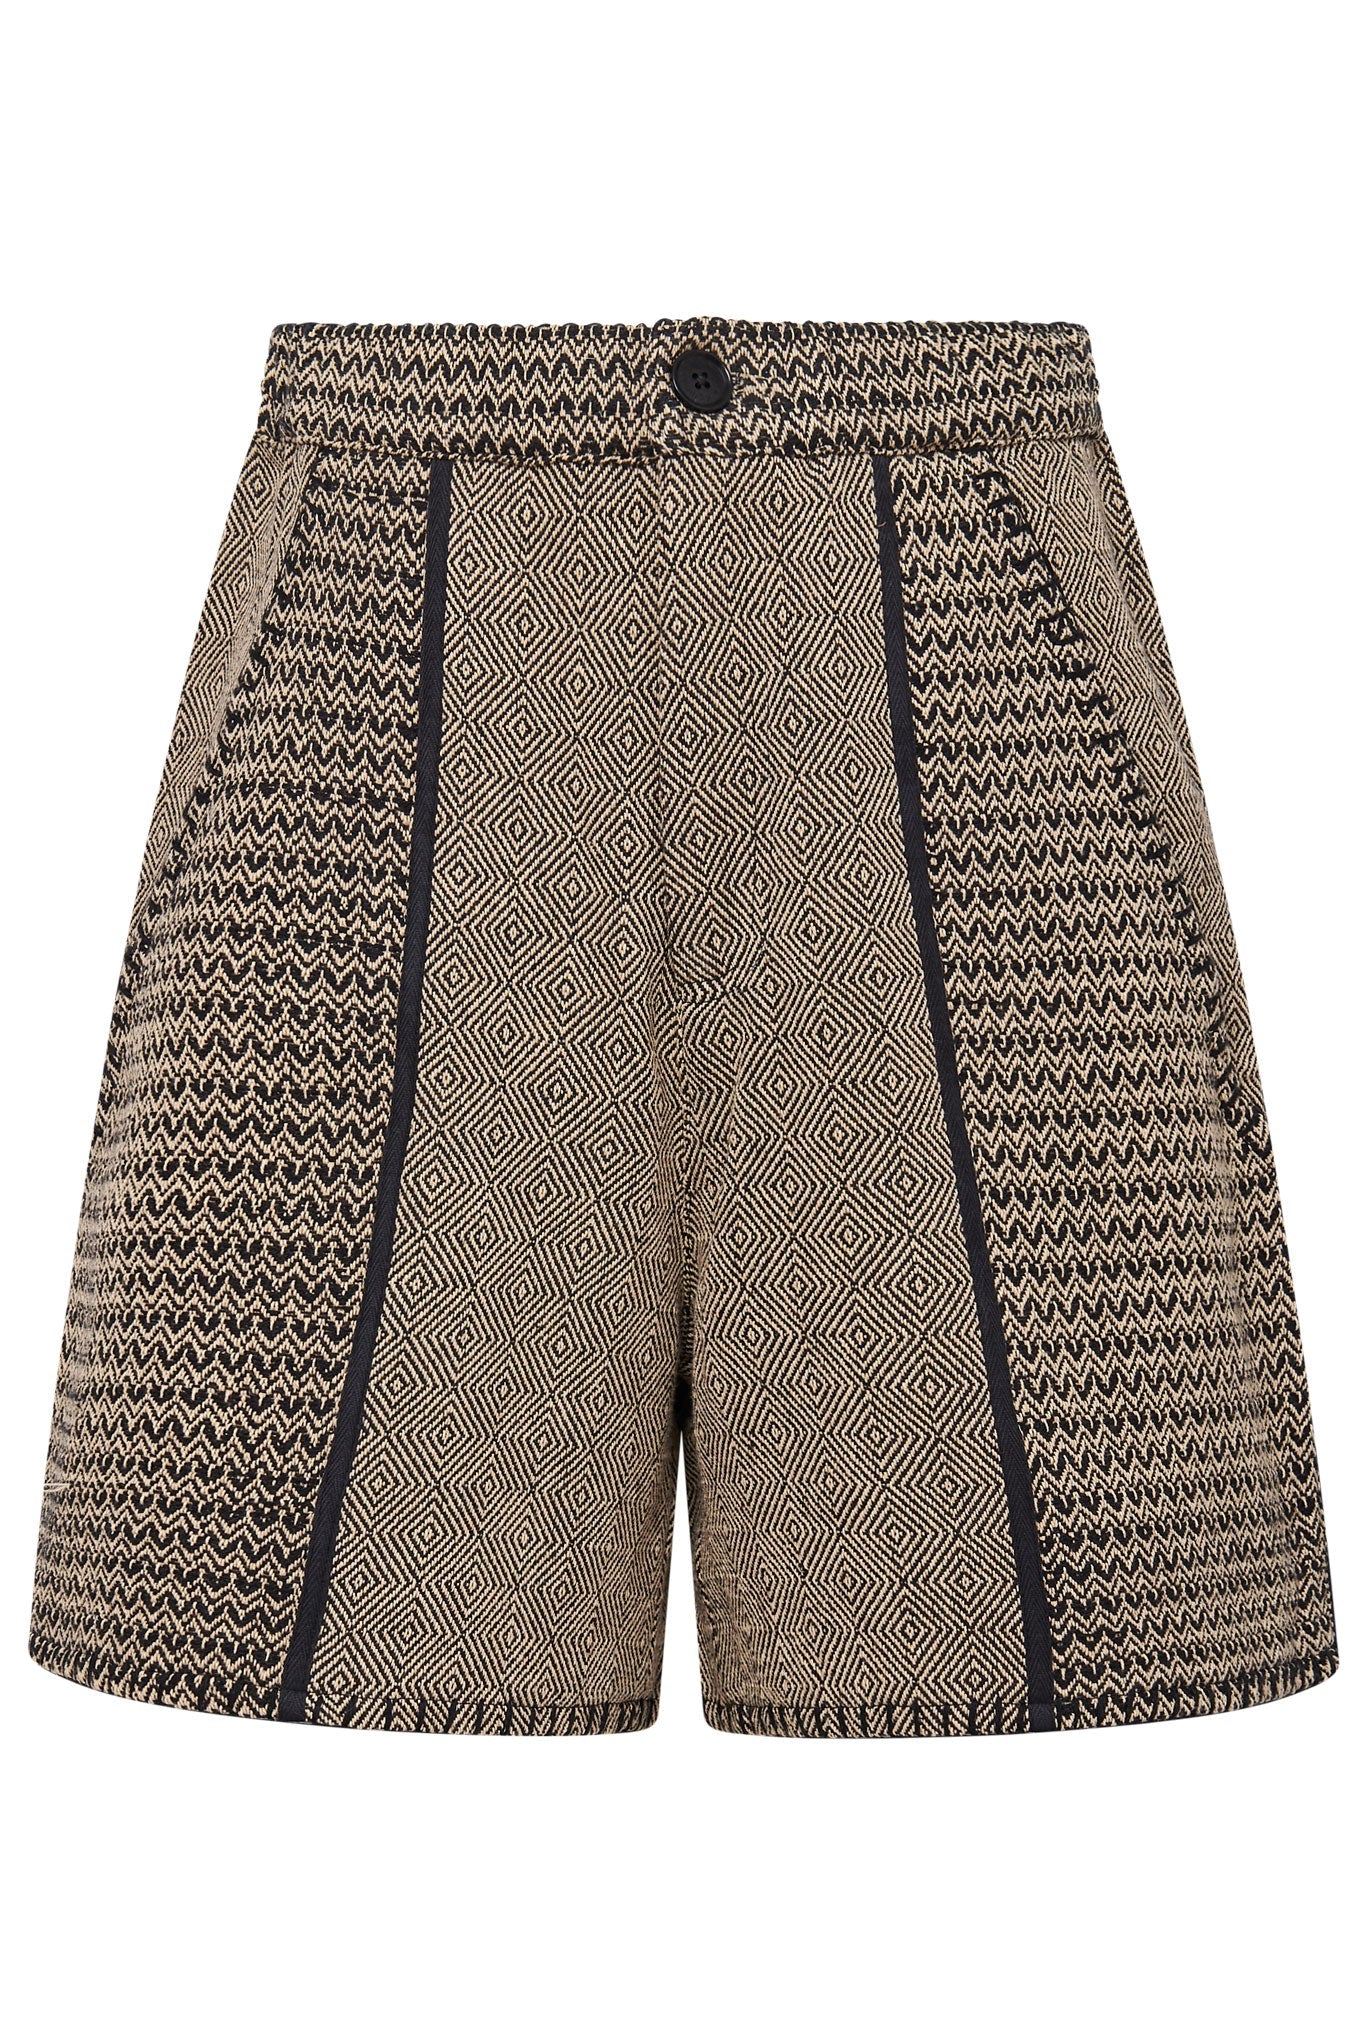 Hellbraune Shorts DOLLY aus 100% Baumwolle von Komodo